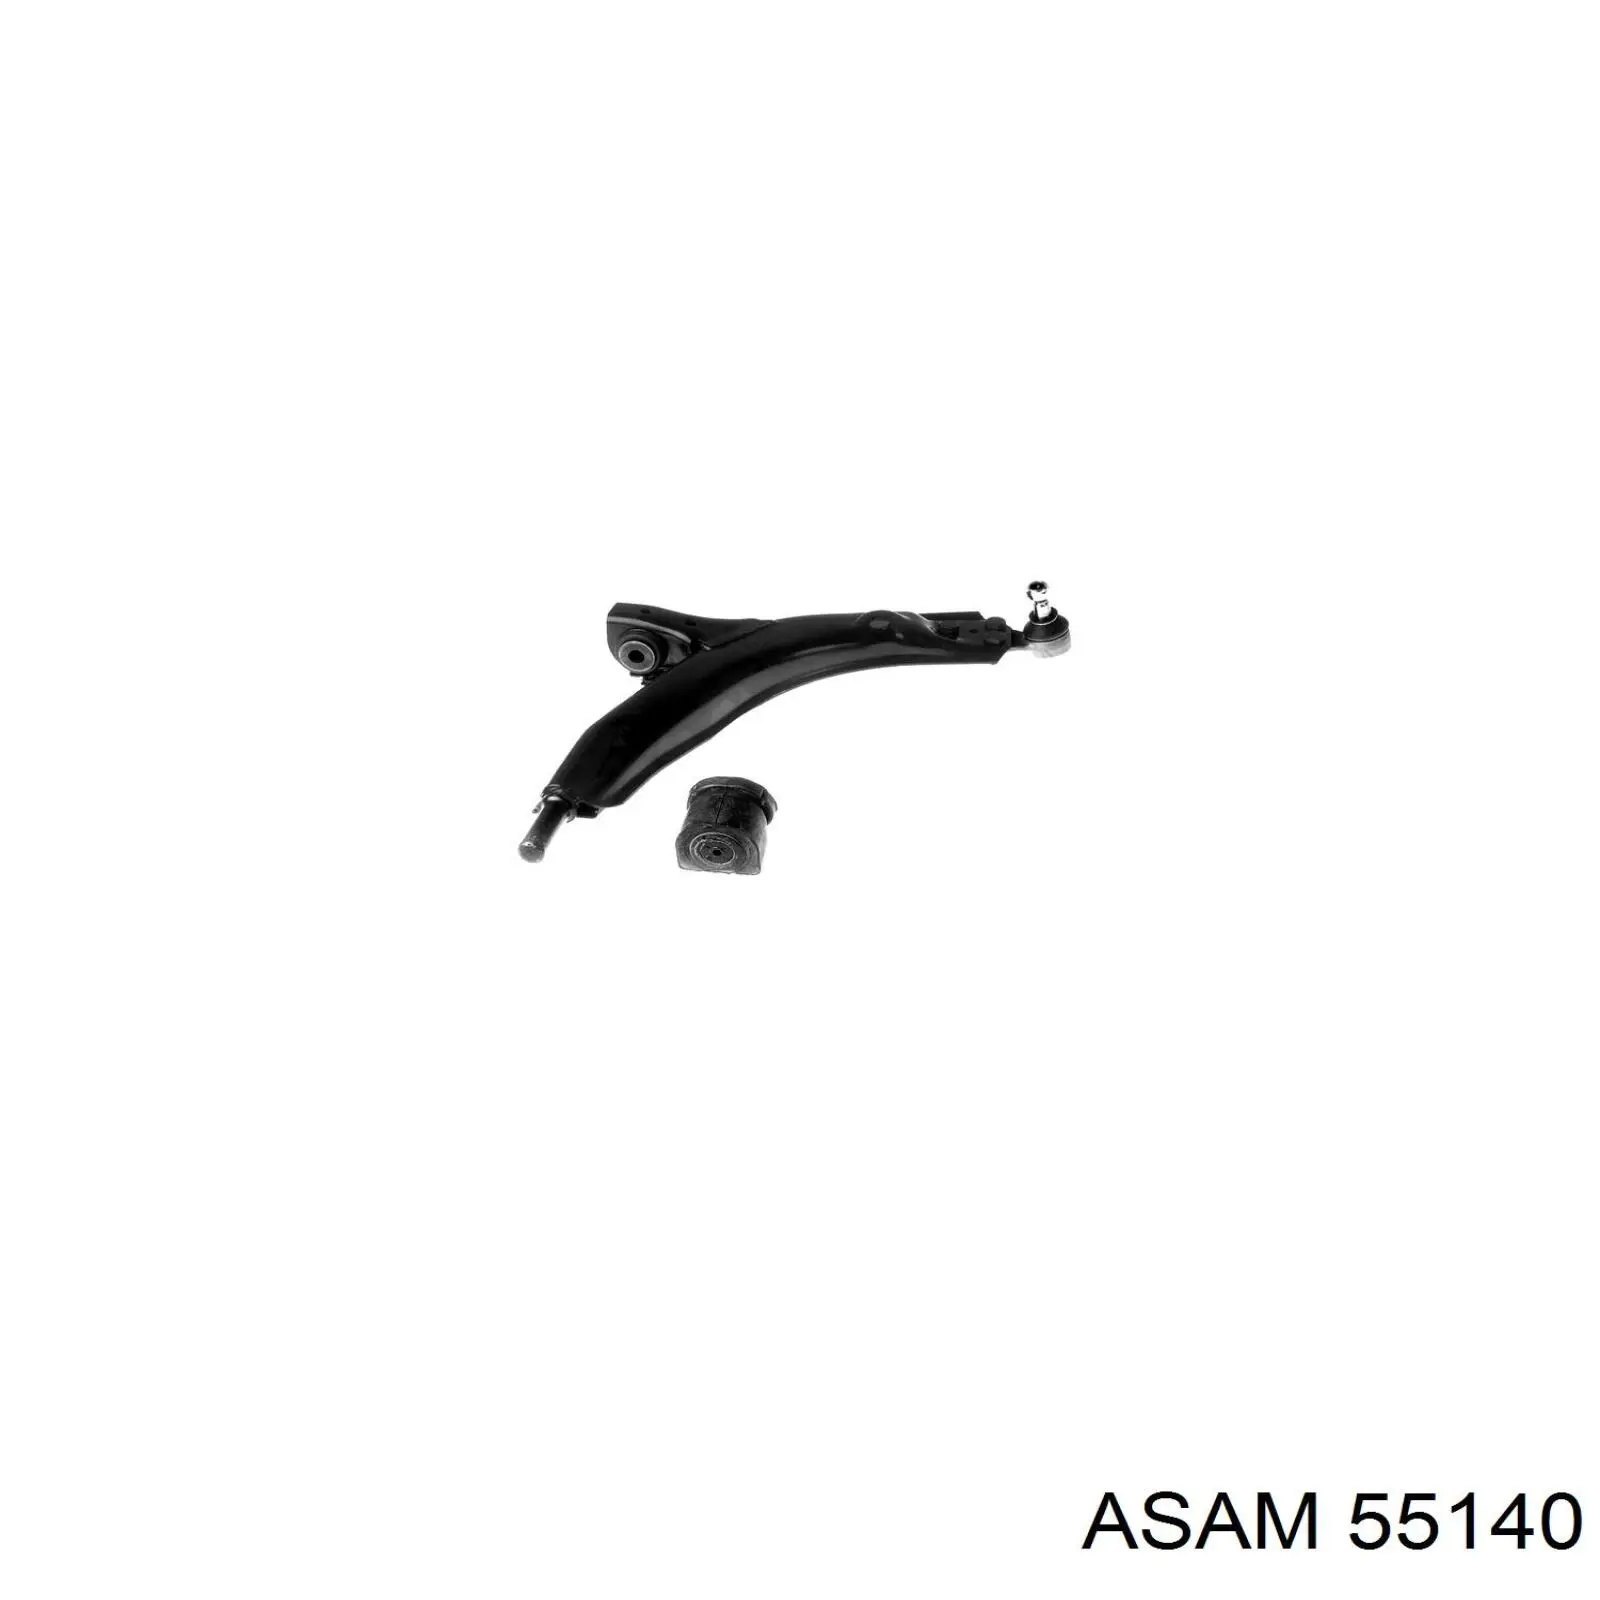 55140 Asam barra oscilante, suspensión de ruedas delantera, inferior derecha